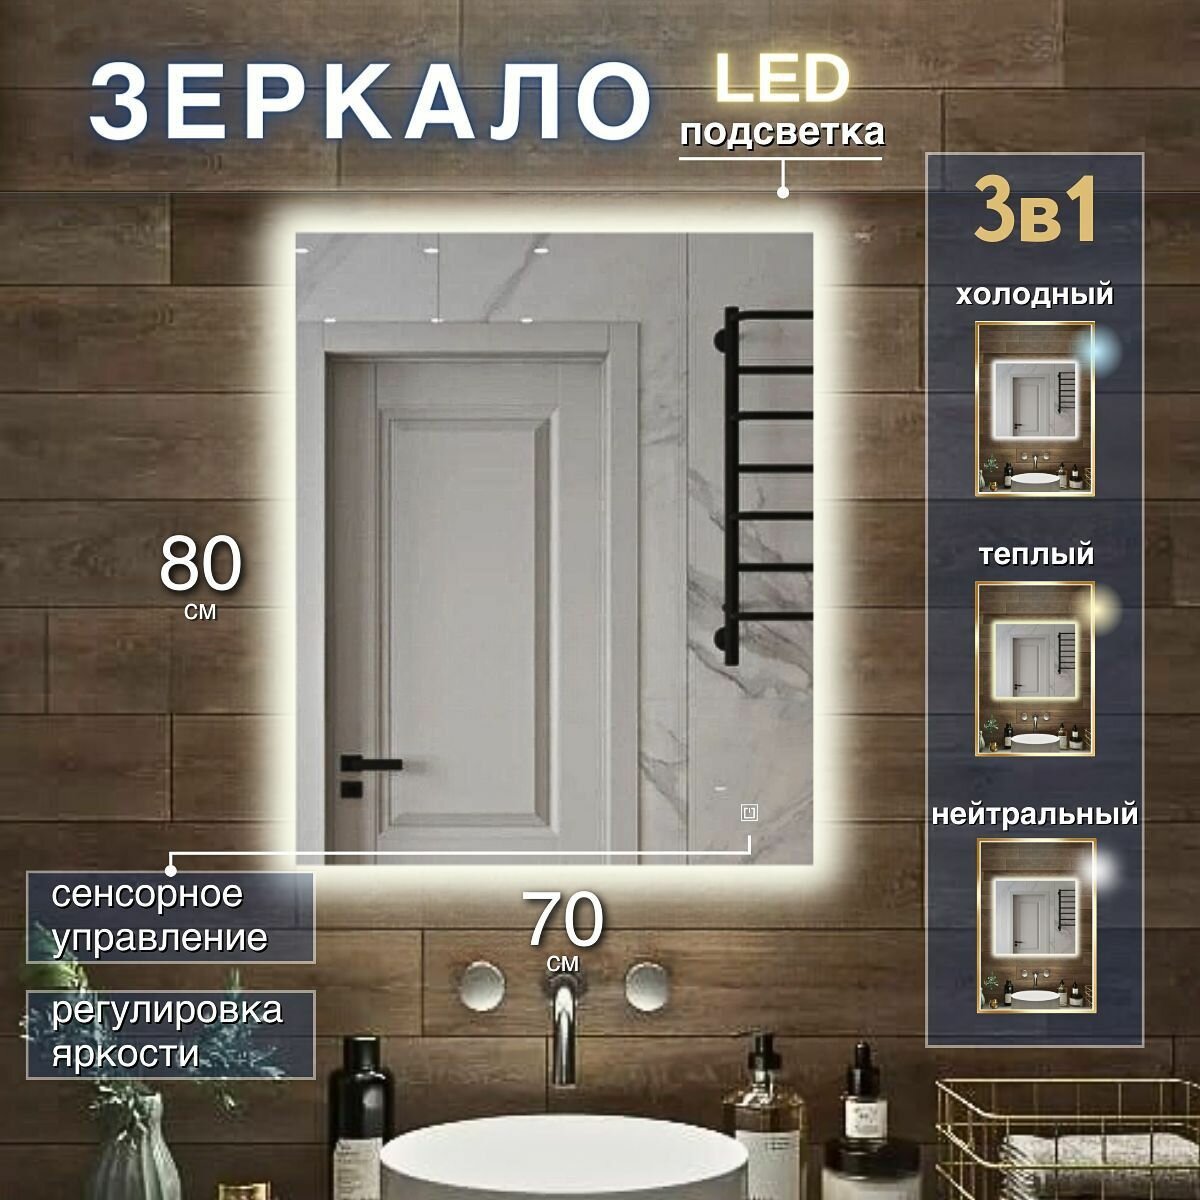 Зеркало с подсветкой 3 в 1 для ванной прямоугольное с сенсорным управлением и регулировкой яркости 70 на 80 см